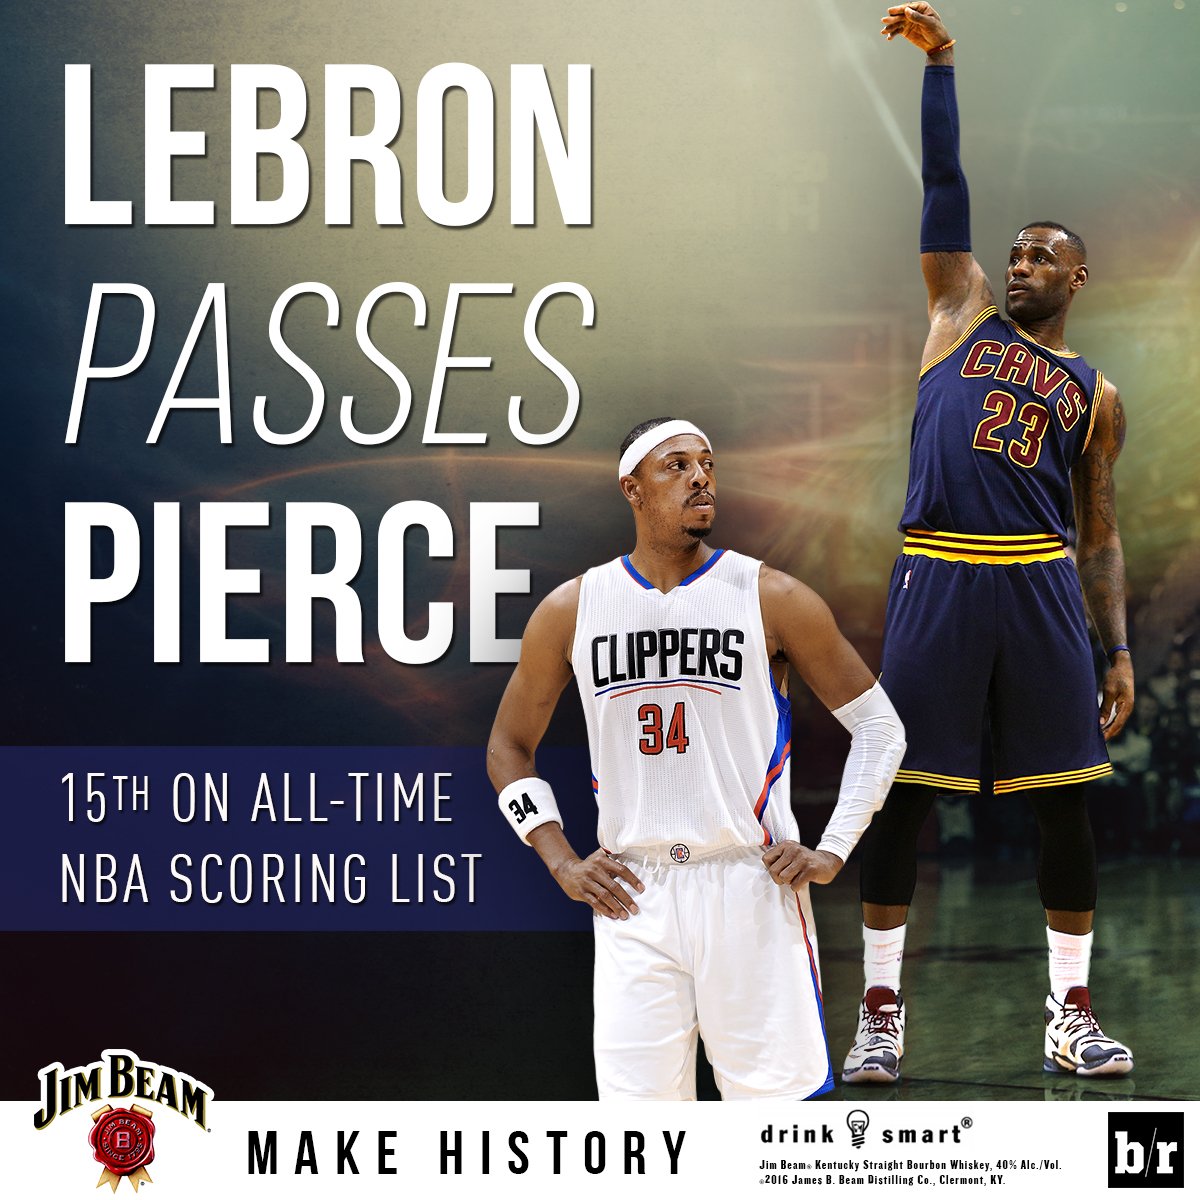 RT @BleacherReport: Congrats to @KingJames on passing Paul Pierce for 15th on the all-time NBA scoring list #MakeHistory https://t.co/2aH1k…